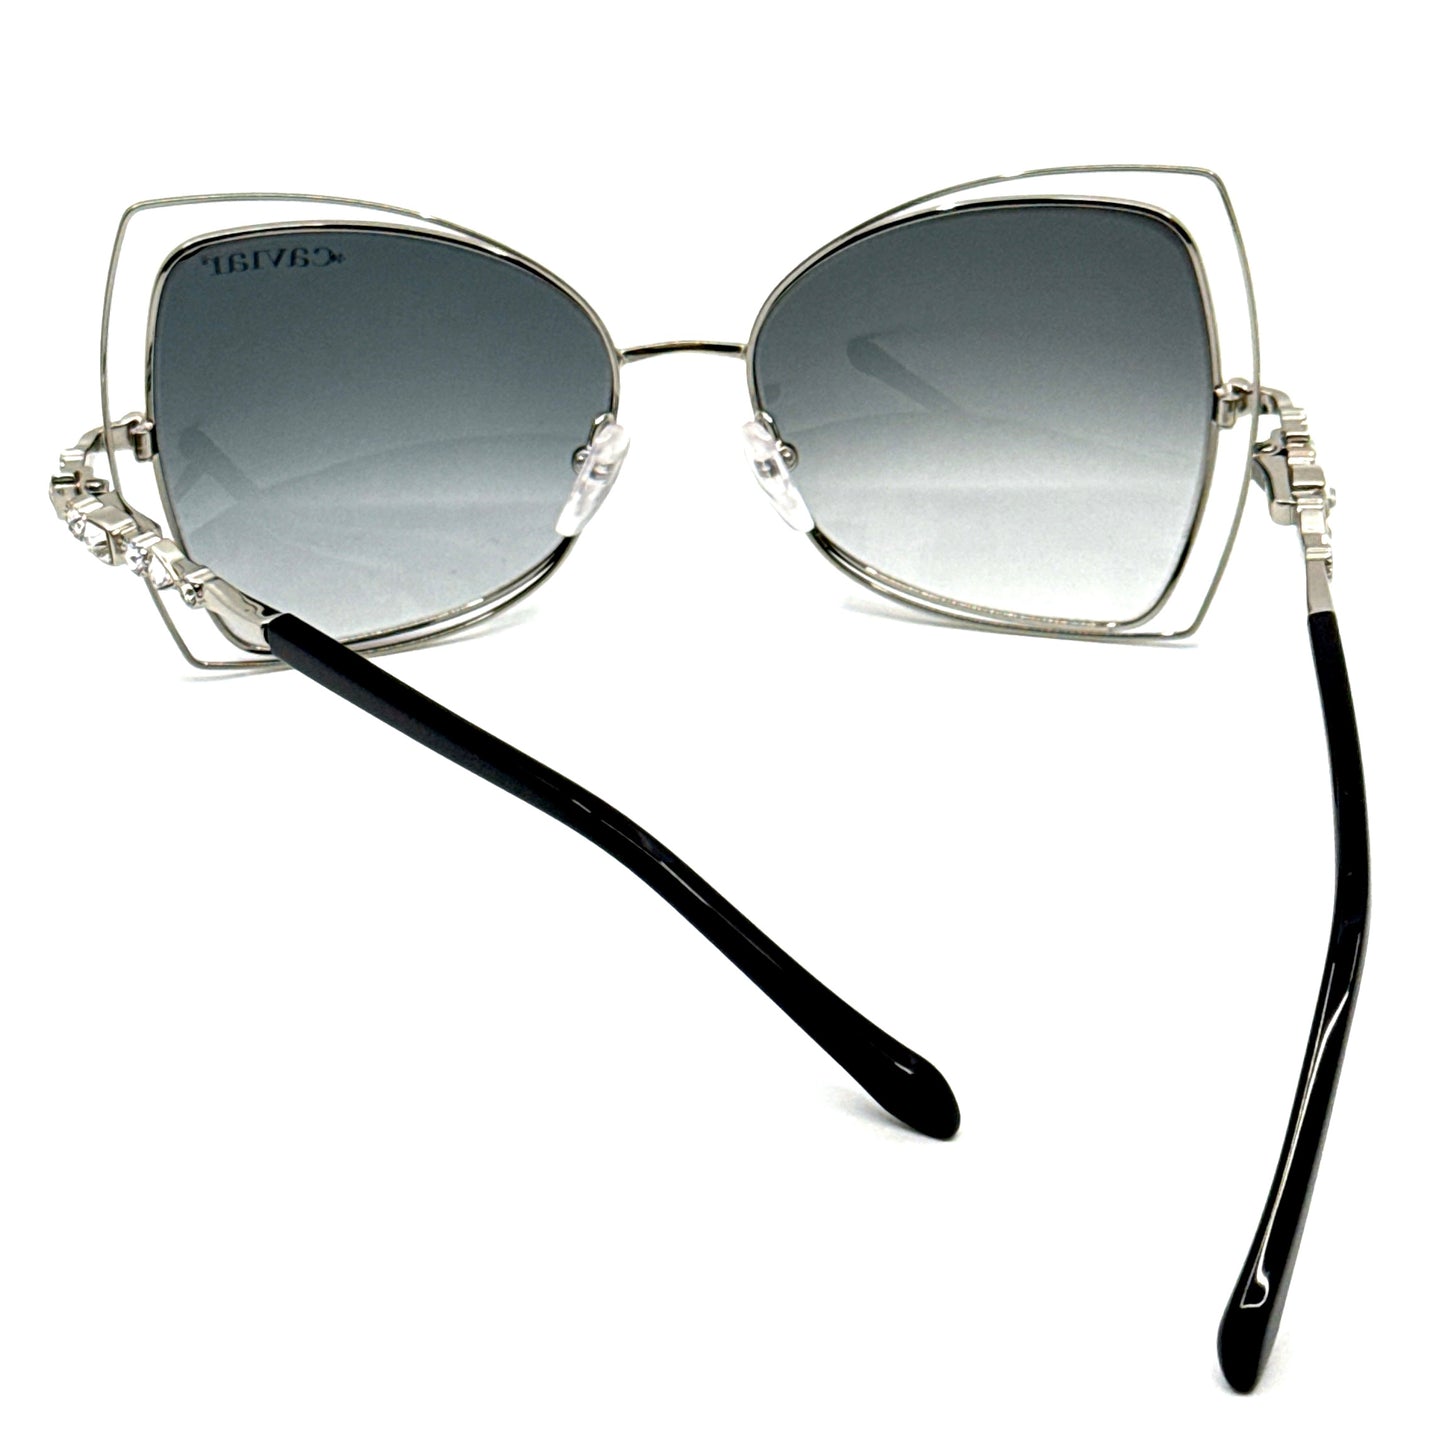 CAVIAR Sunglasses M4893 C35